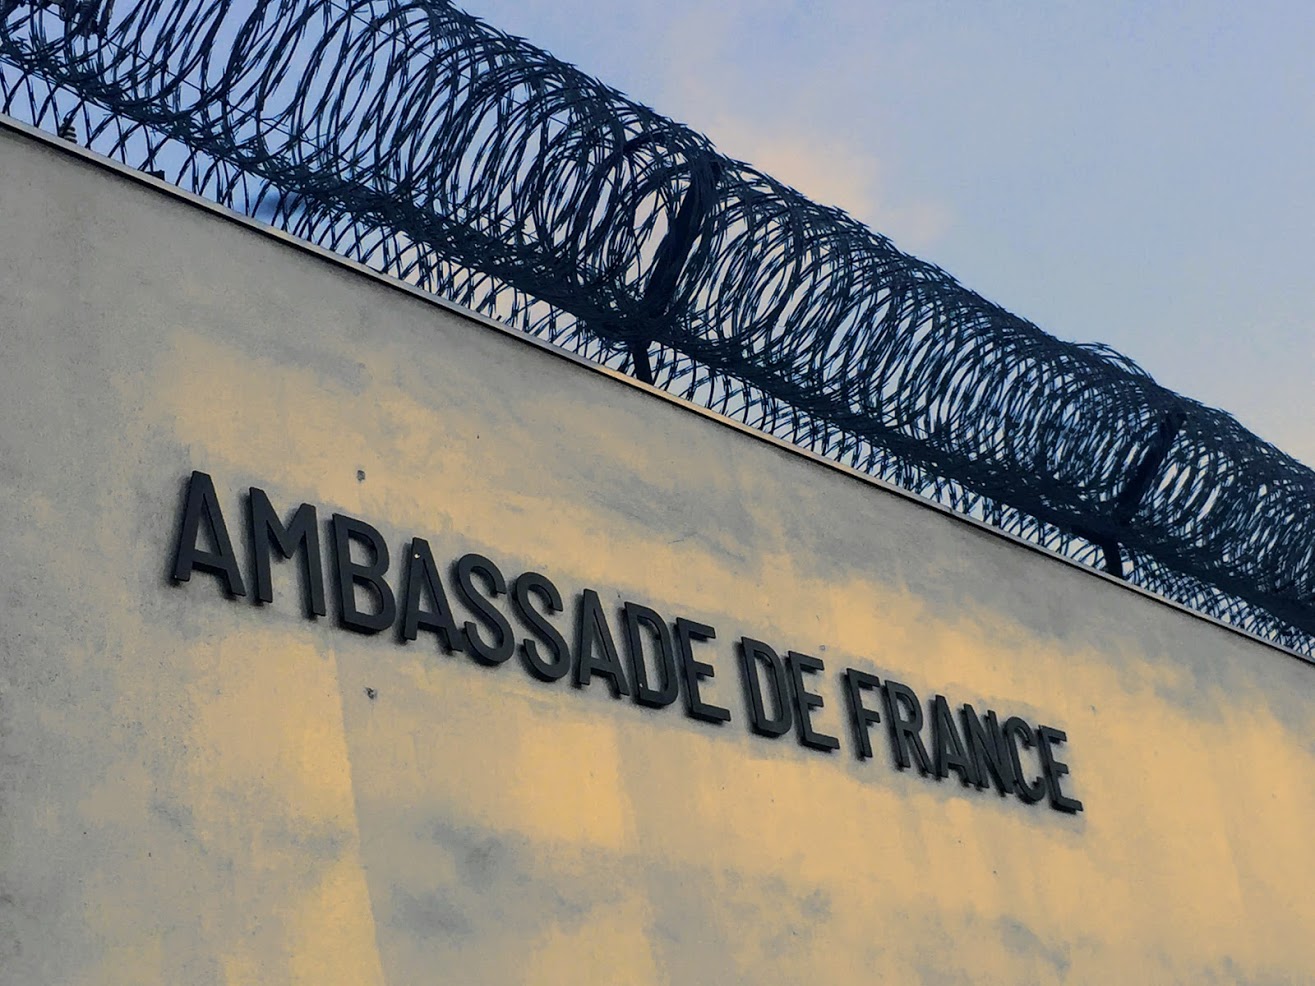 Une façade de l’ambassade française à Port-au-Prince, Haïti, octobre 2018. Photo Tanbou.